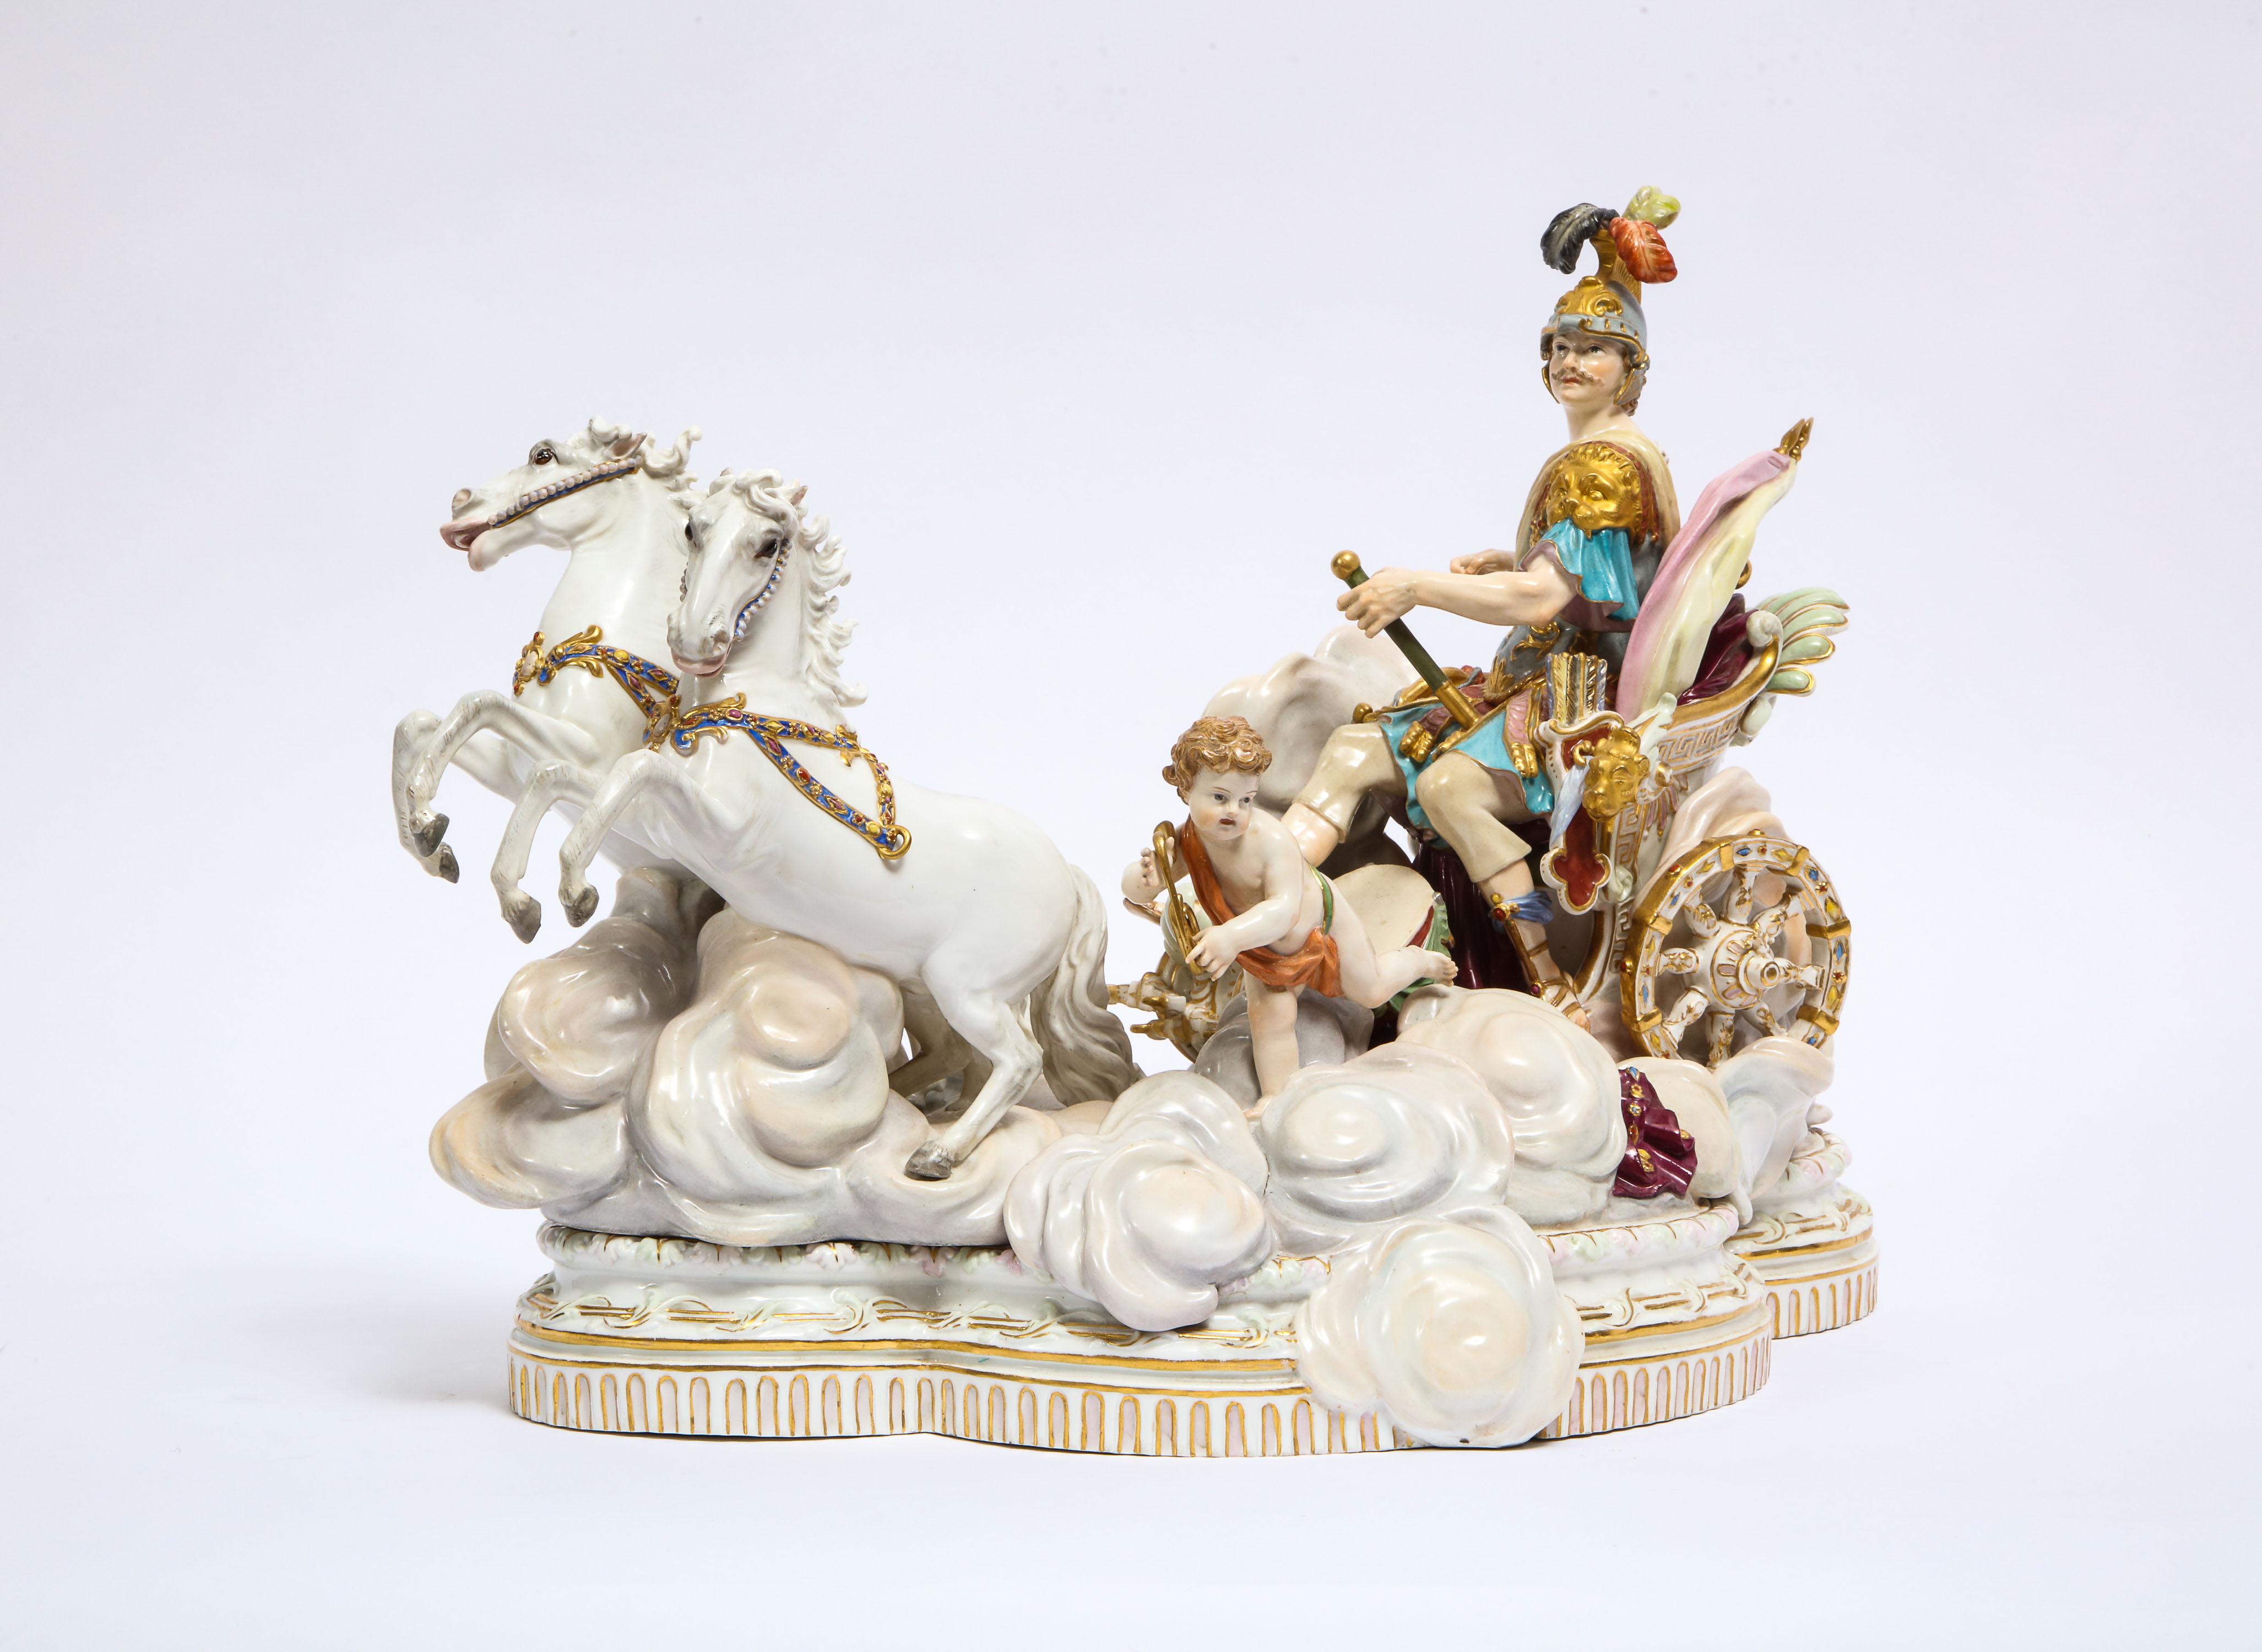 Un magnifique et assez grand groupe de style baroque en porcelaine de Meissen représentant Mars, le dieu de la guerre, en char avec sa servante Putti, conçu à l'origine par Johann Joachim Kändler en 1772-1773 pour la tsarine Katharina, mieux connue